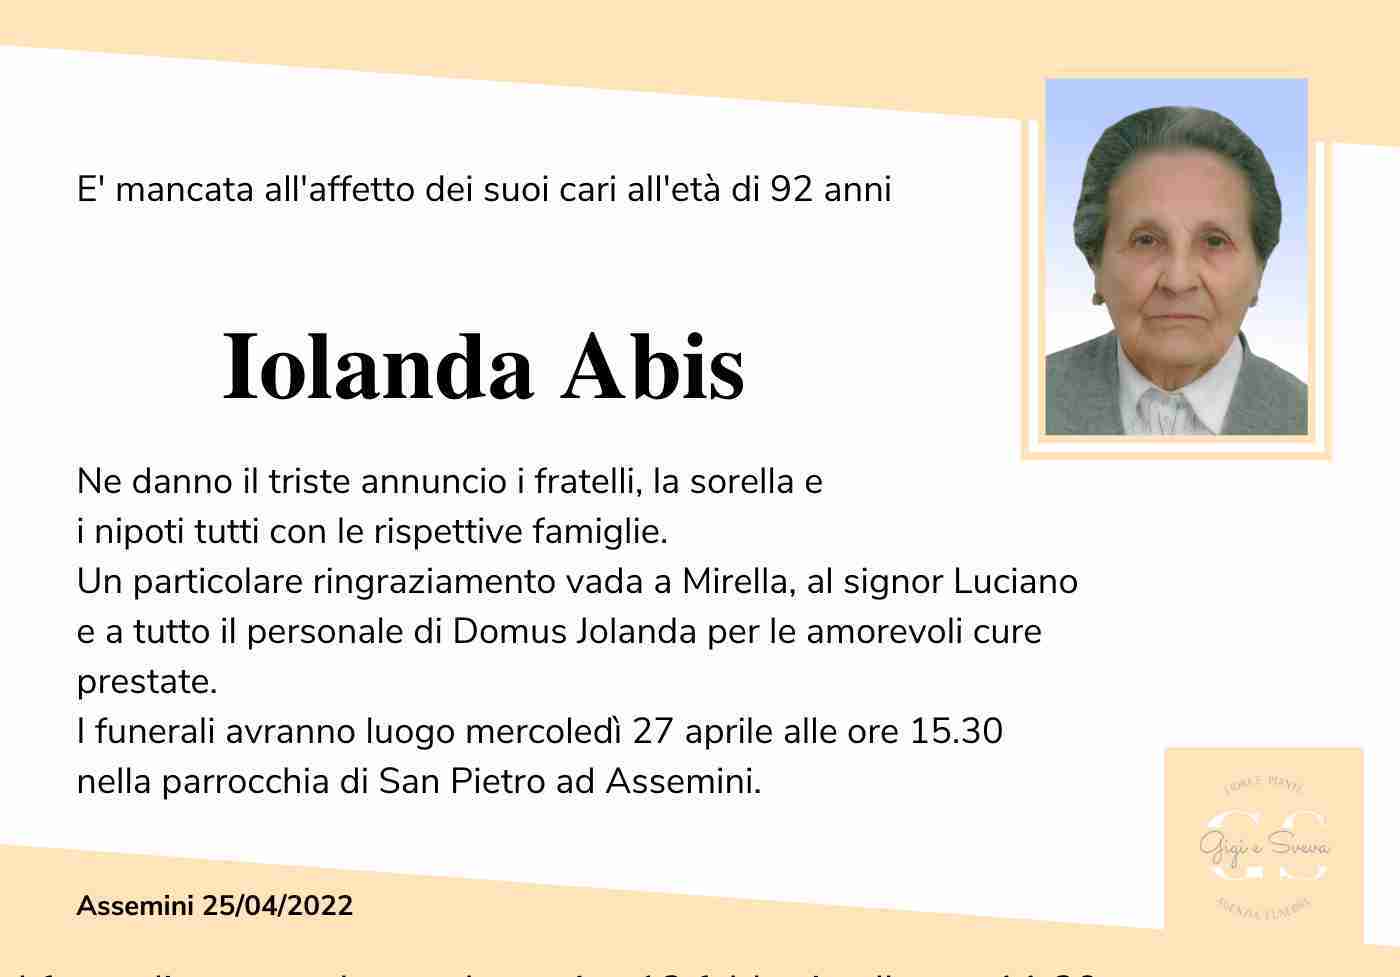 Iolanda Abis